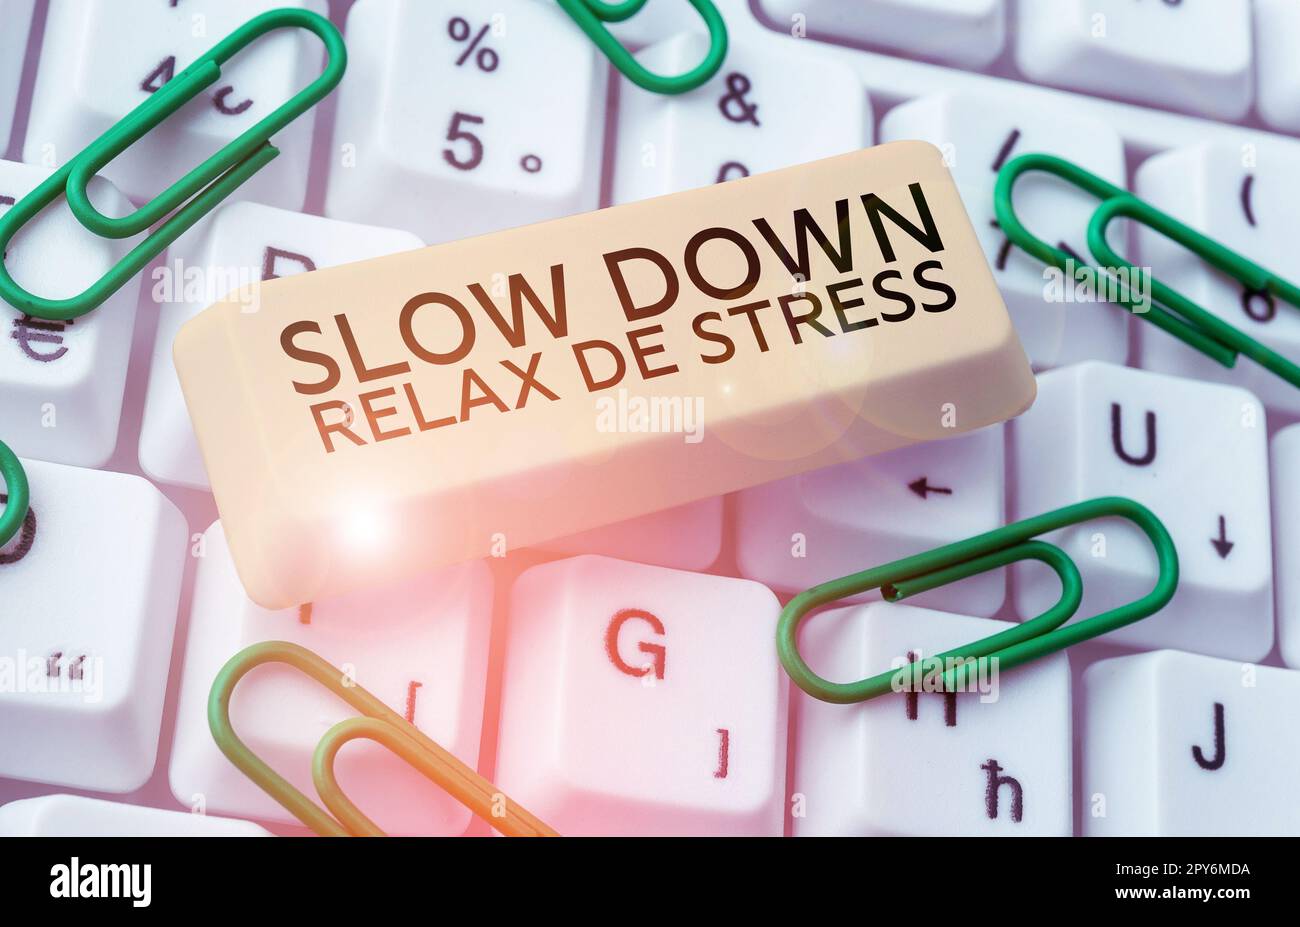 Konzeptionelle Beschriftung Slow Down Relax De Stress. Internetkonzept Have a Break Stresspegel reduzieren Ruhe Stockfoto